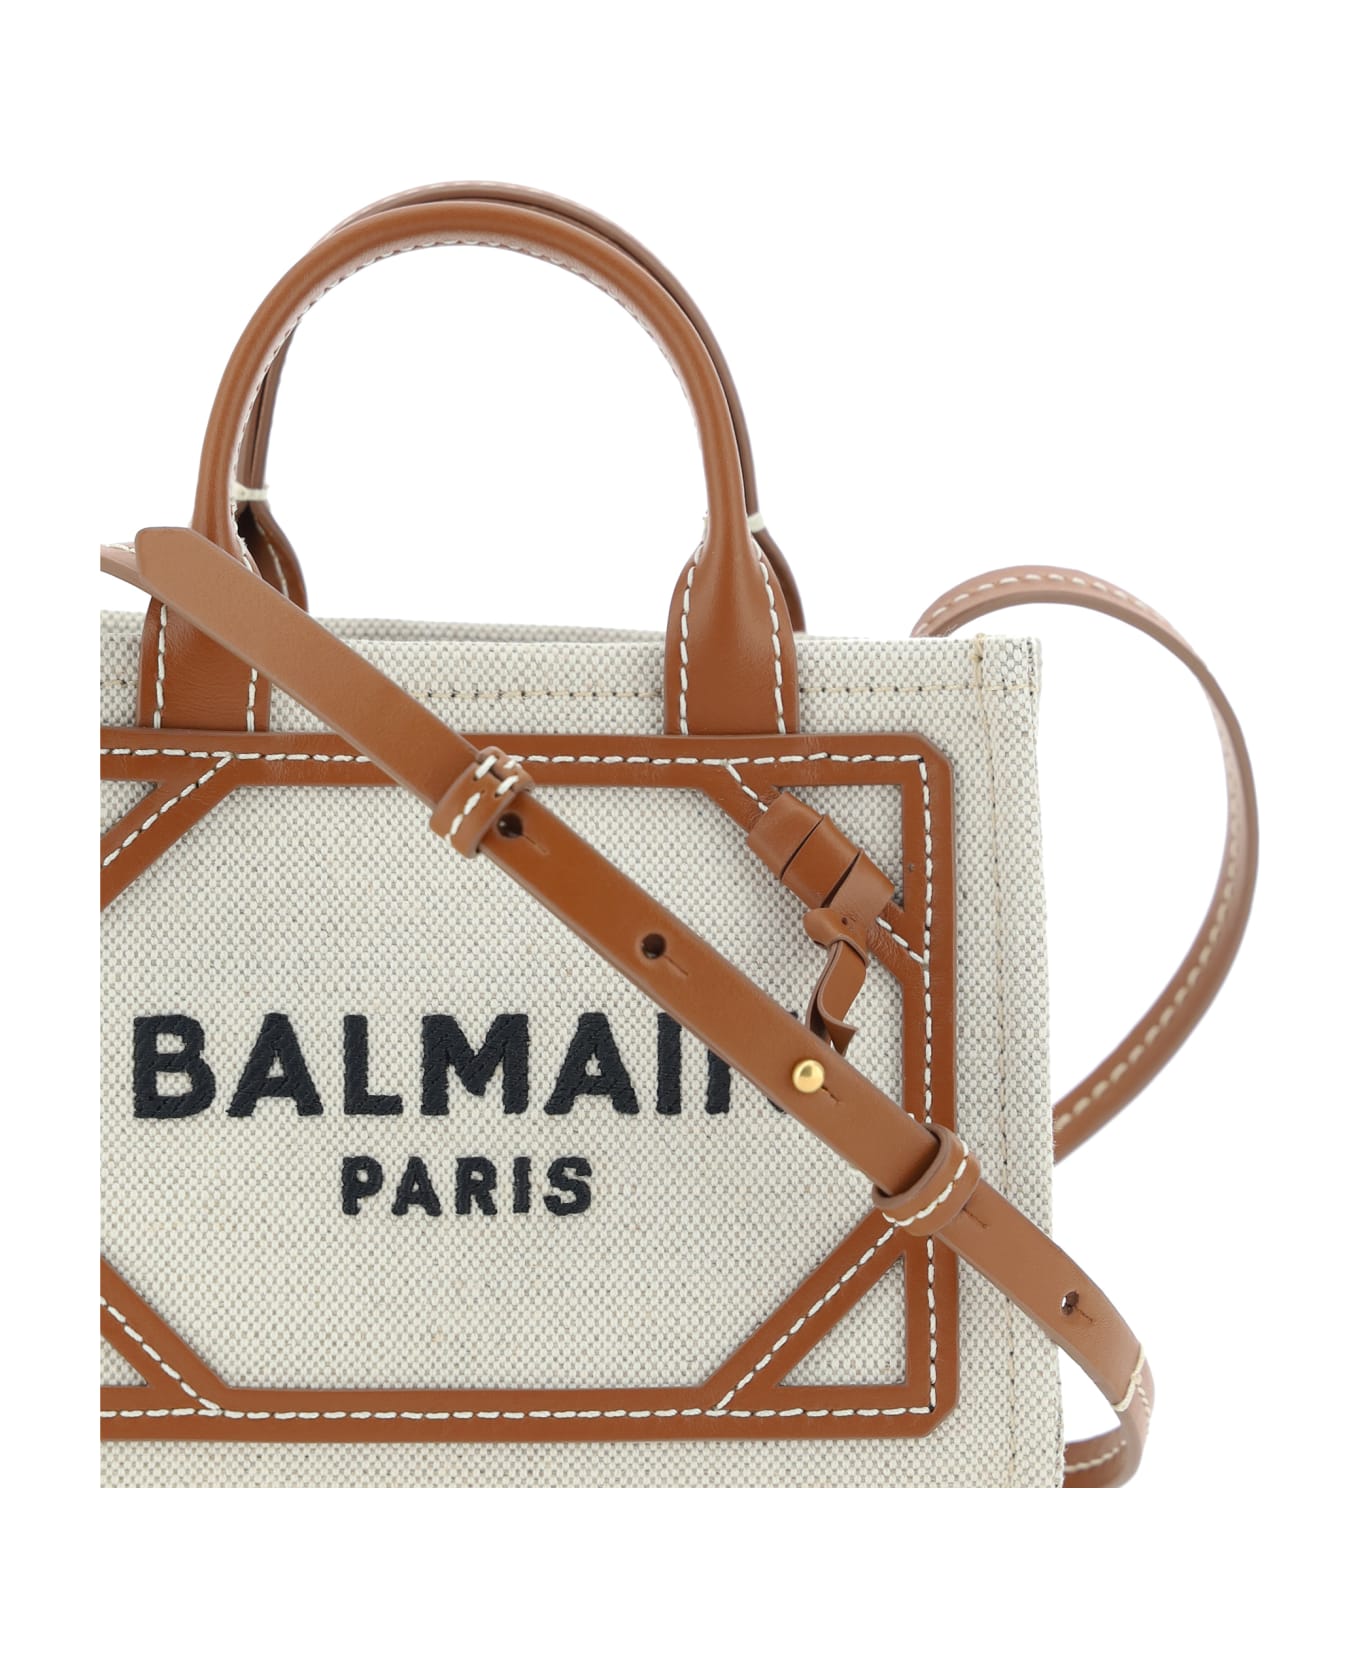 Balmain B-army Handbag - Gem Naturel/marron